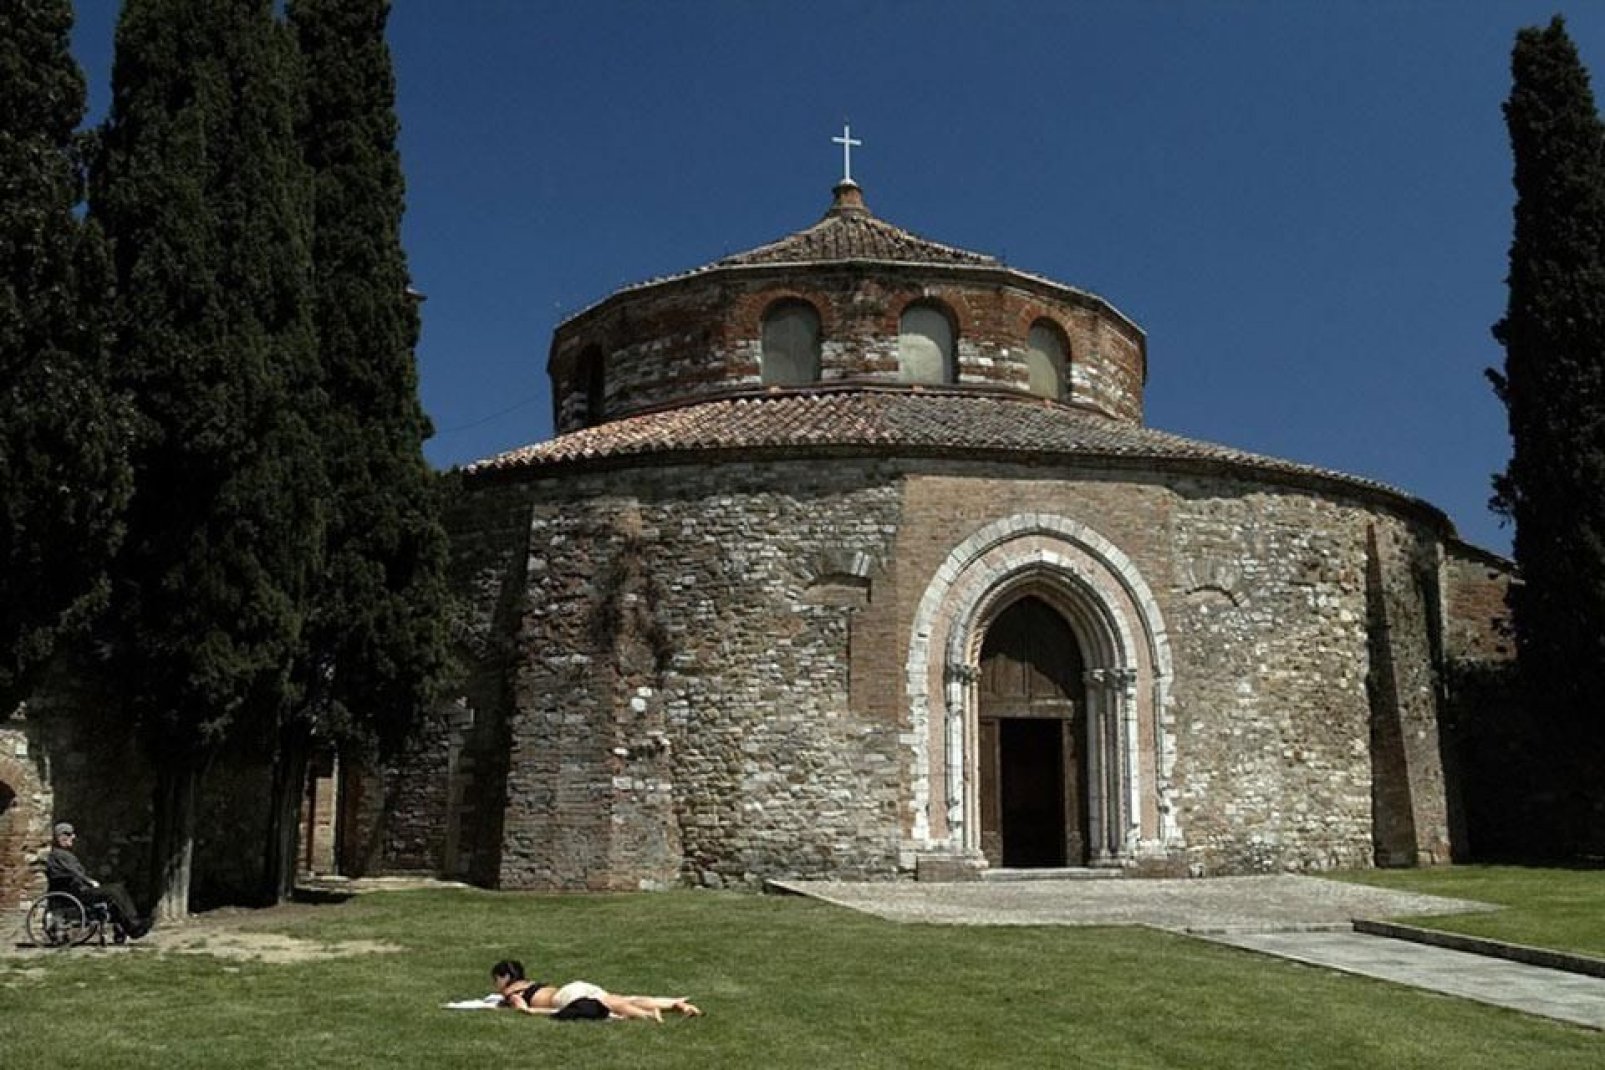 Le Temple de Sant'Angelo est une église paléochrétienne du Ve siècle, rare exemple d'église à plan circulaire.